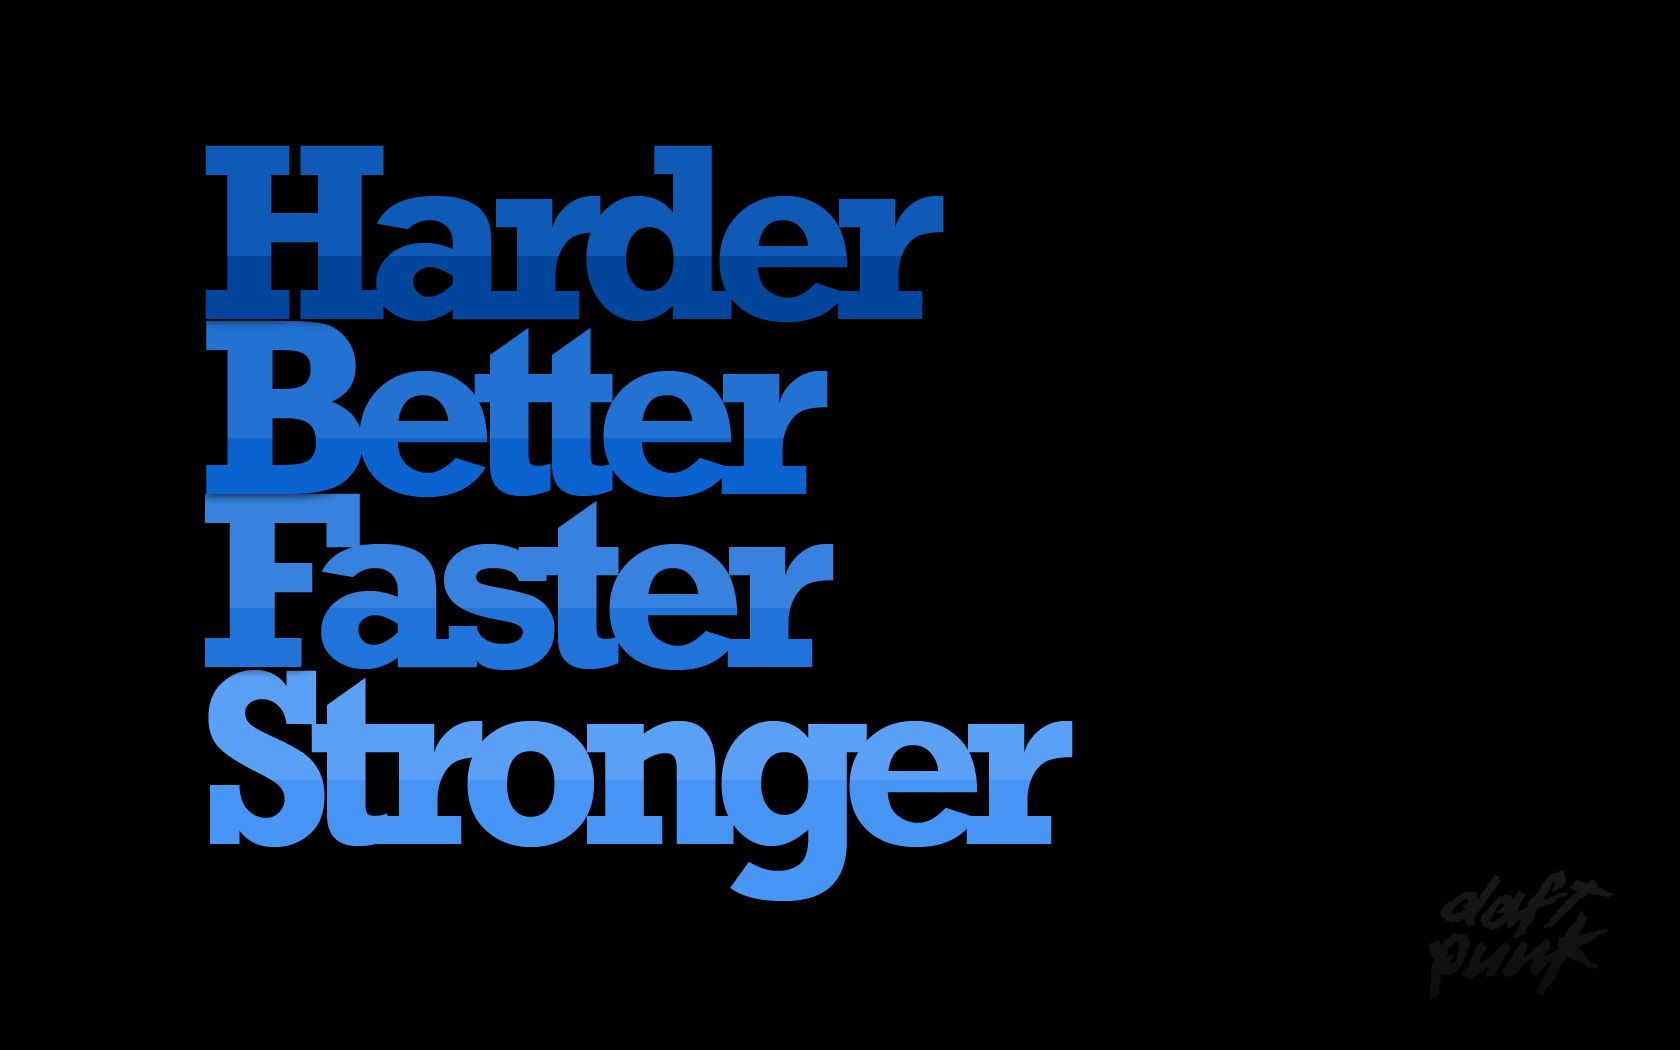 Harder Better Faster Stronger wallpaper. Harder Better Faster